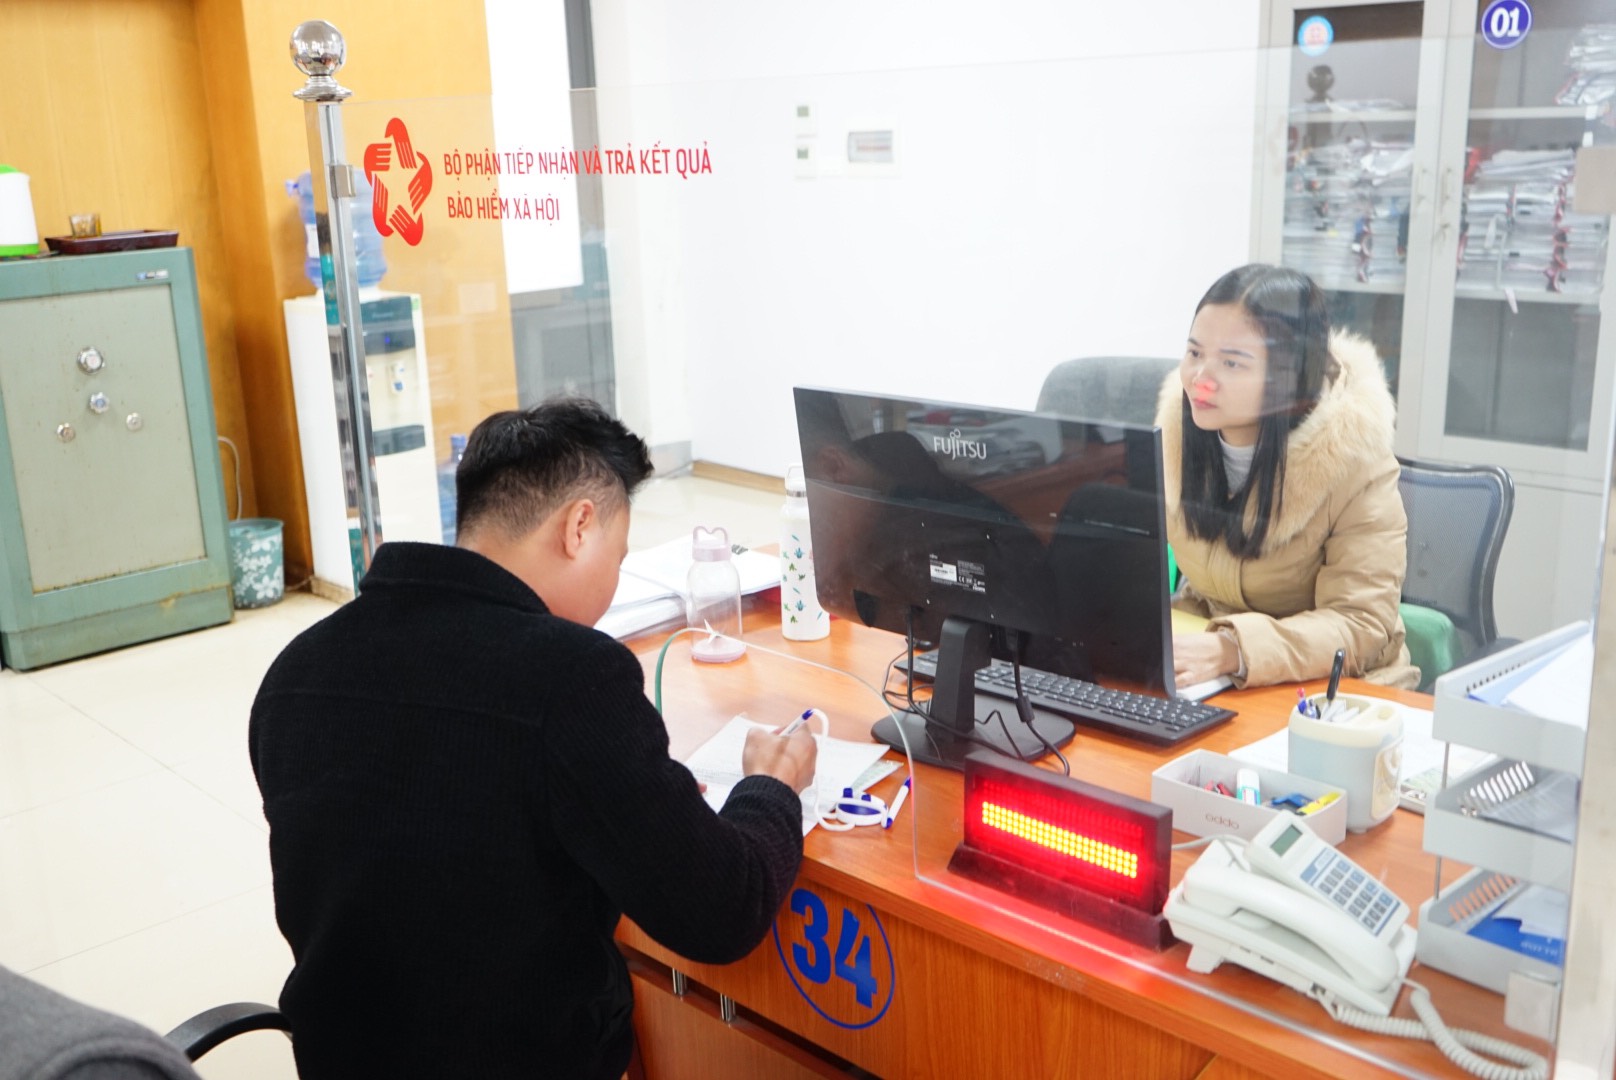 Đẩy mạnh triển khai dịch vụ bưu chính công ích trong tiếp nhận hồ sơ và trả kết quả giải quyết thủ tục hành chính trên địa bàn tỉnh